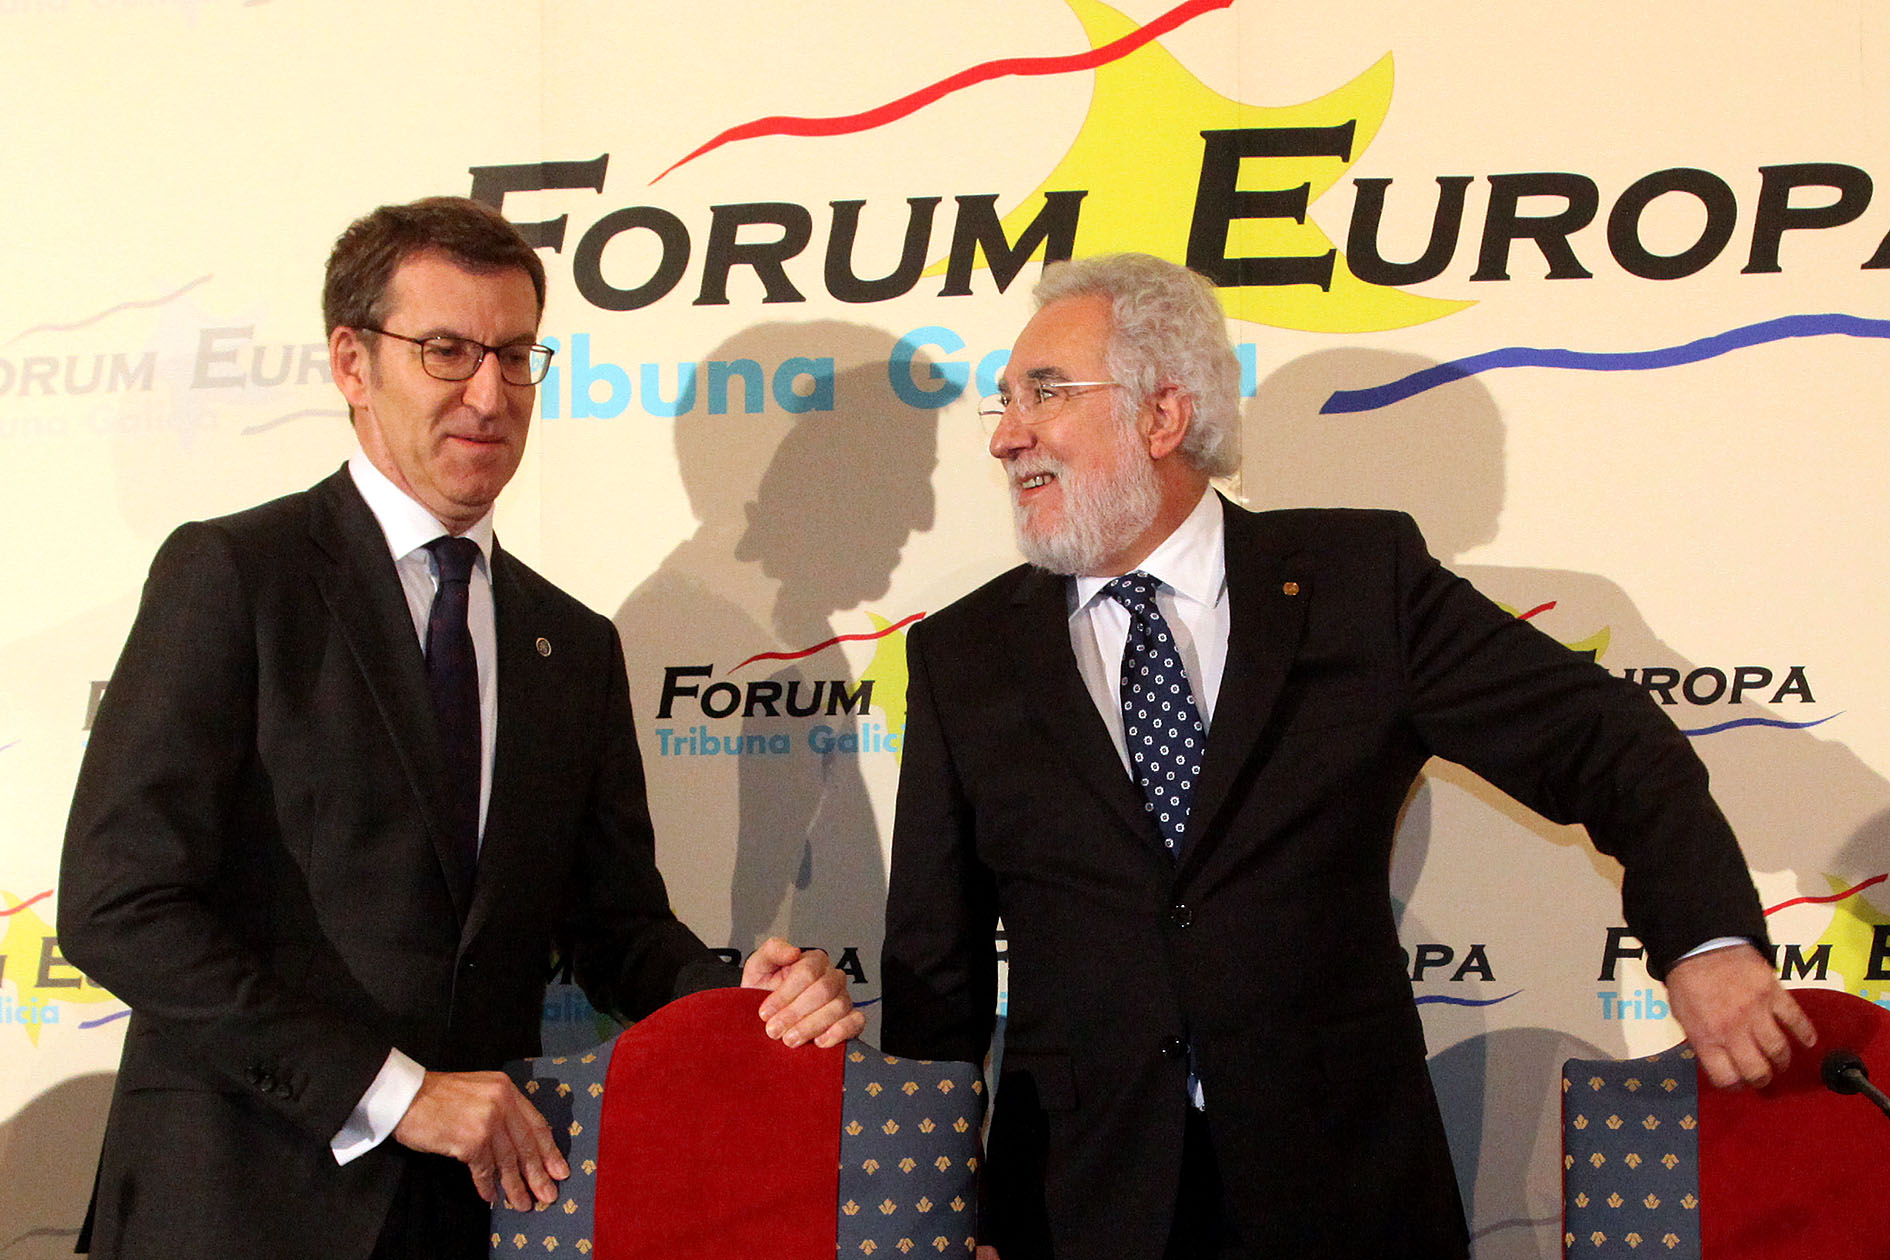 O presidente do Parlamento de Galicia participou no foro organizado por Nueva Economía Fórum